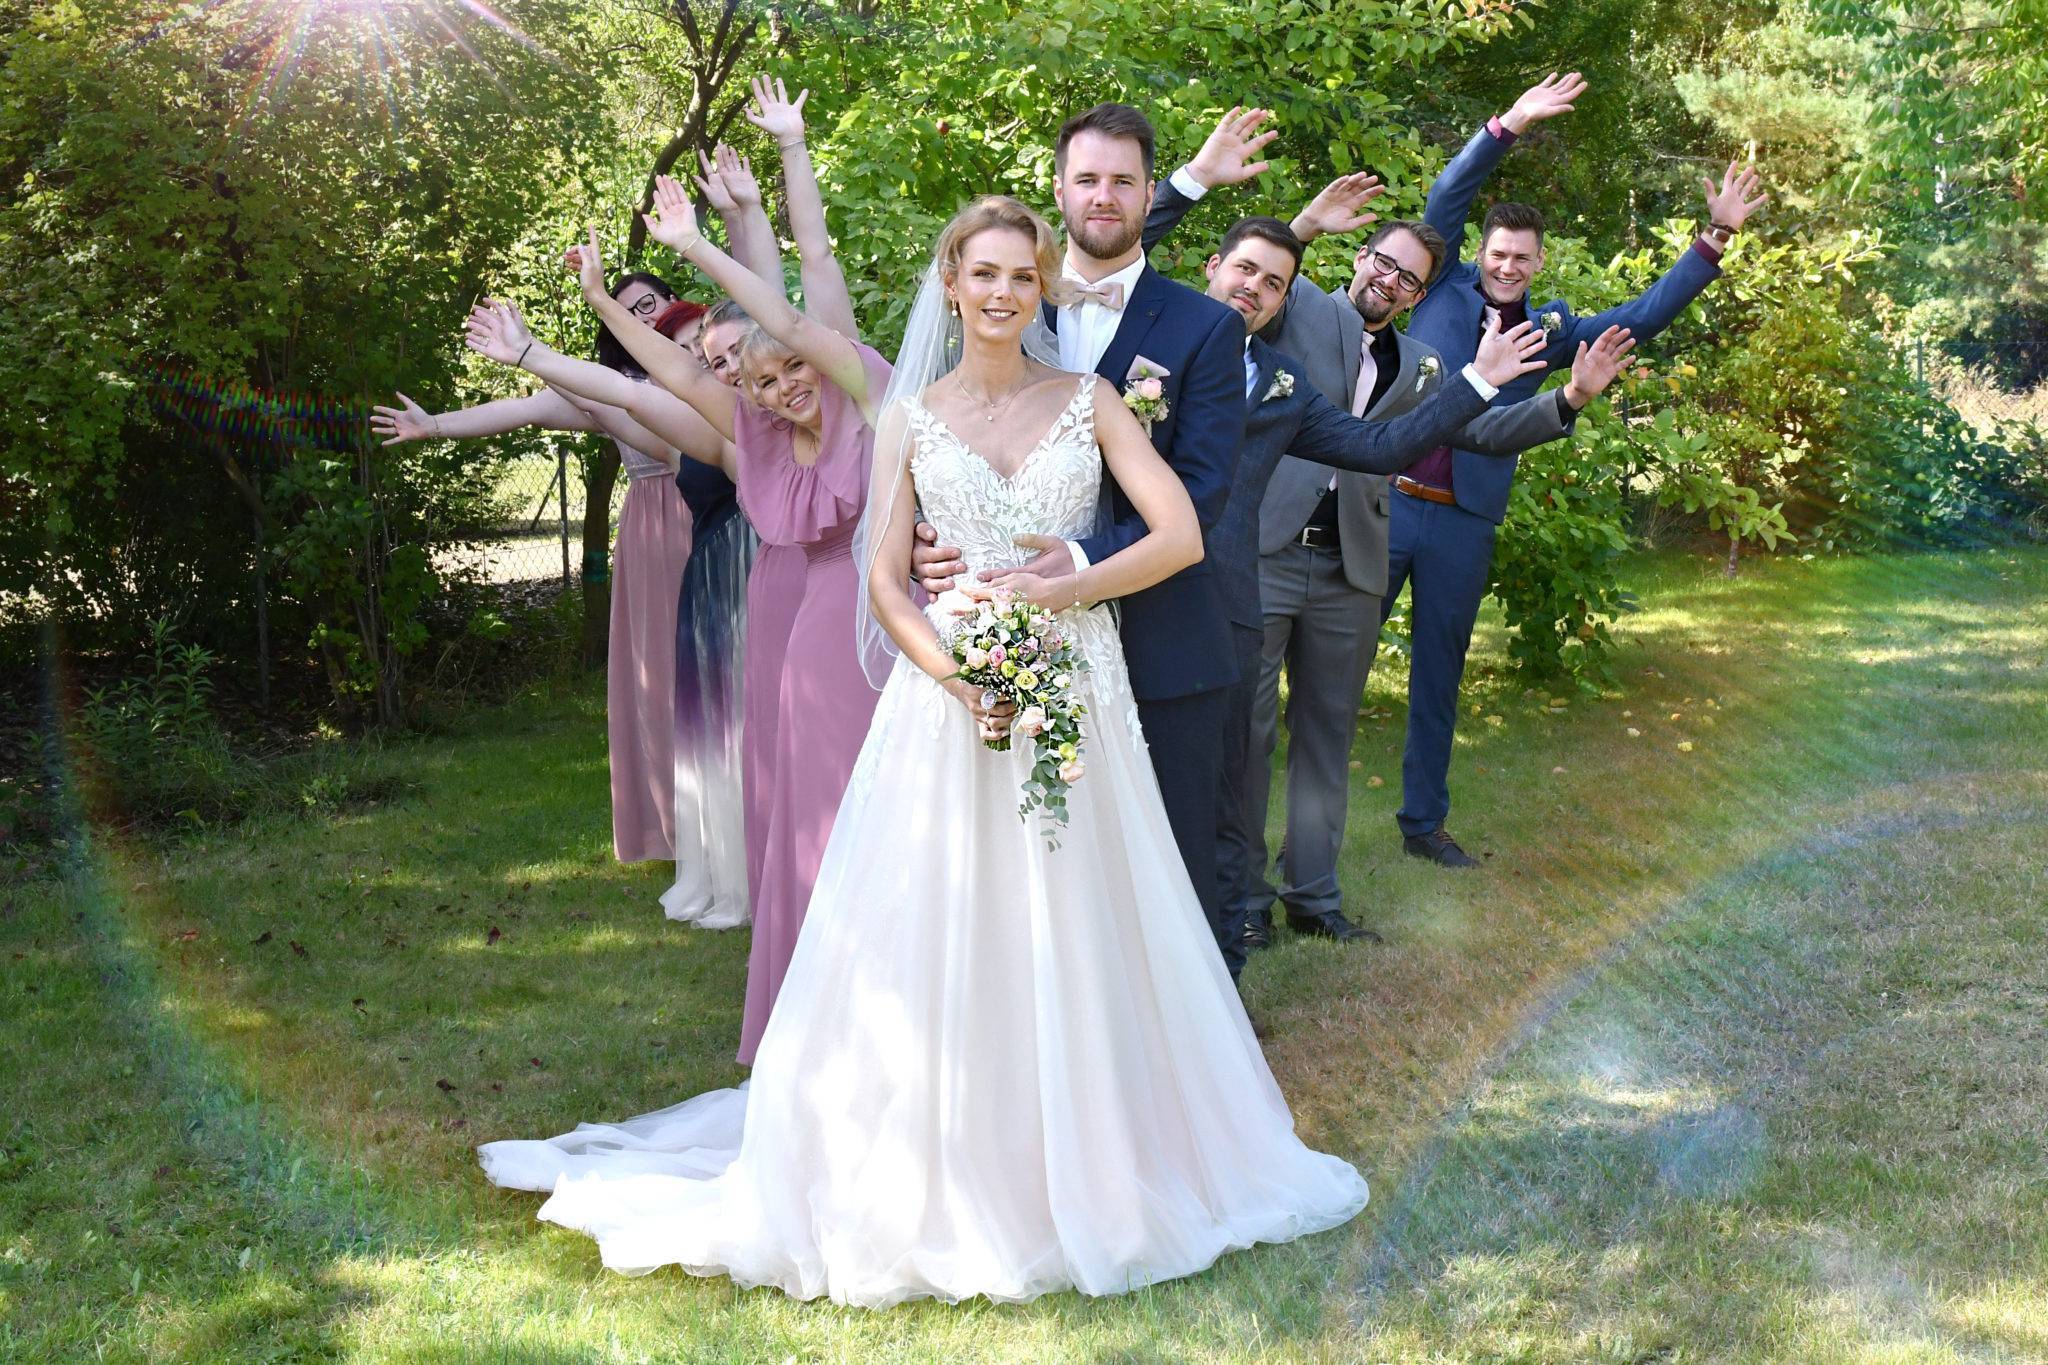 Brautpaar Fotoshooting mit Trauzeugen und Freunden im Garten